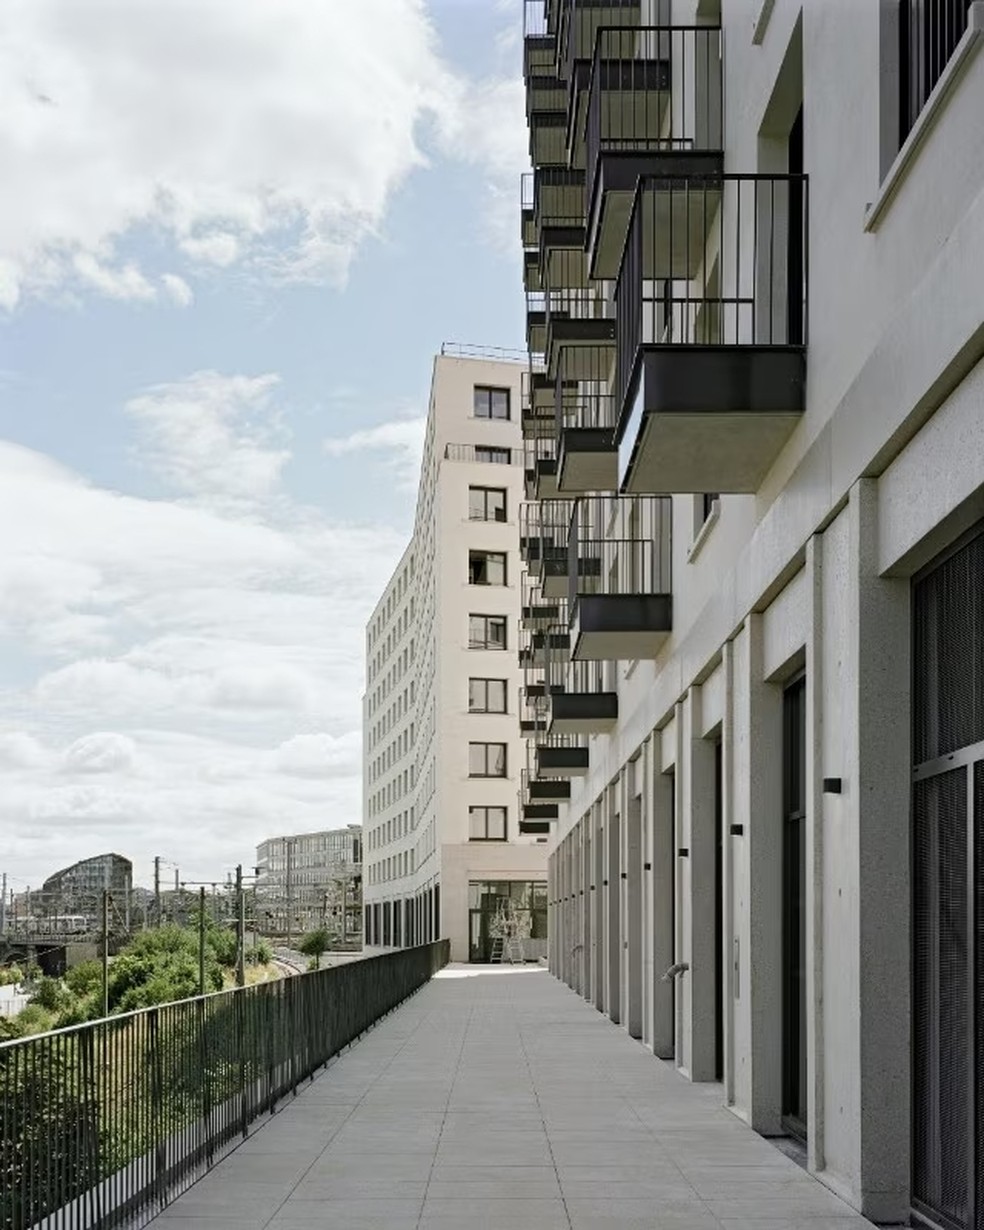 O bairro possui quatro prédios, de forma que ocupa 2.500 m³ do espaço  — Foto: Julien Hourcade